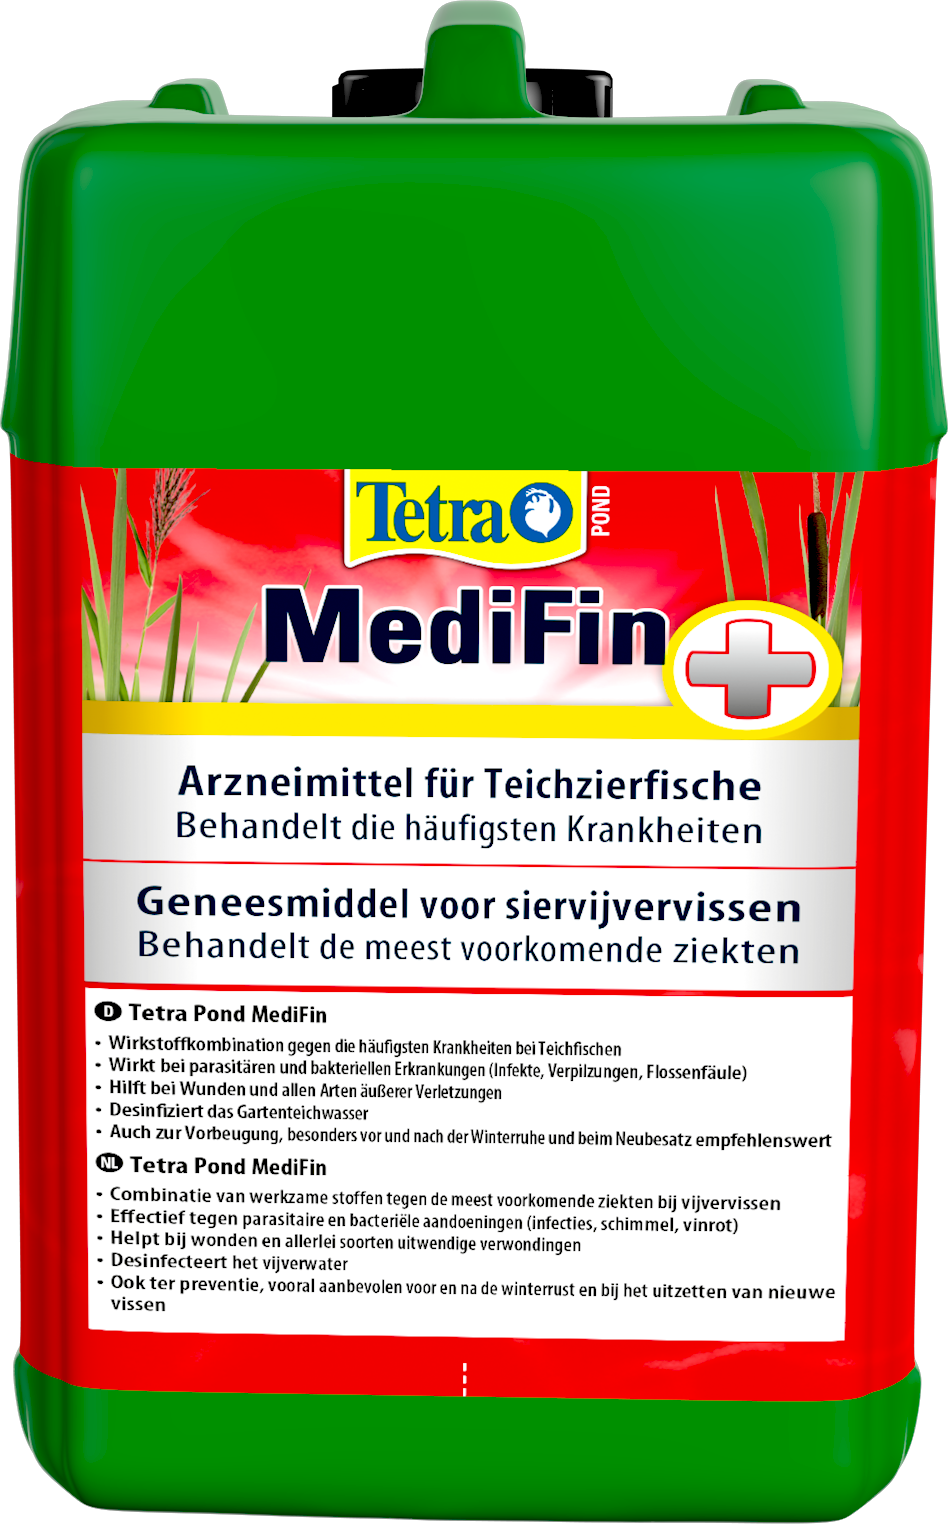 TetraPond MediFin 3